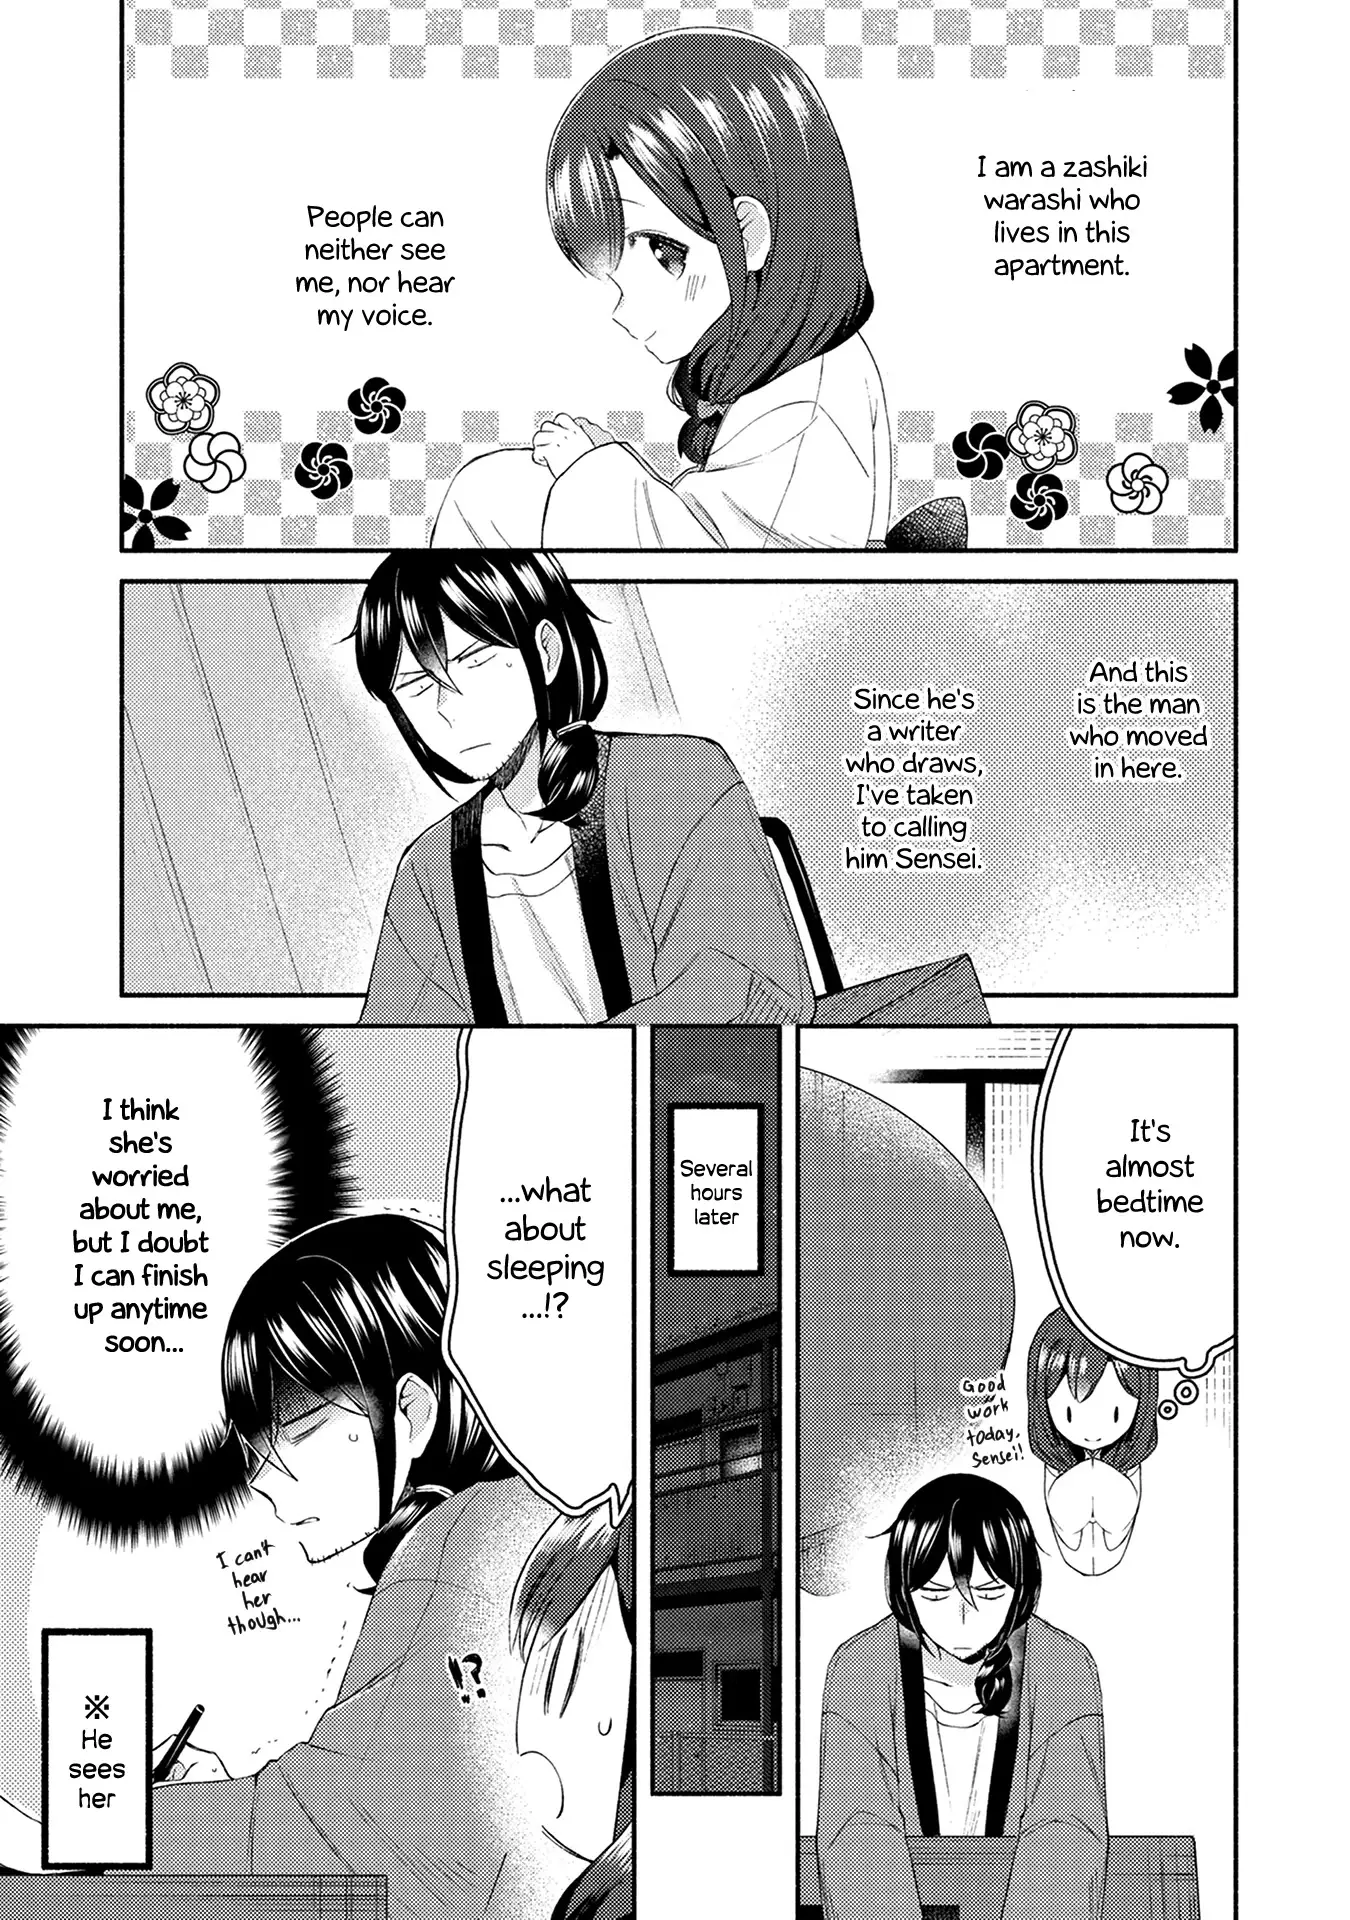 Mangaka-Sensei To Zashiki Warashi - 17 page 1-55500463